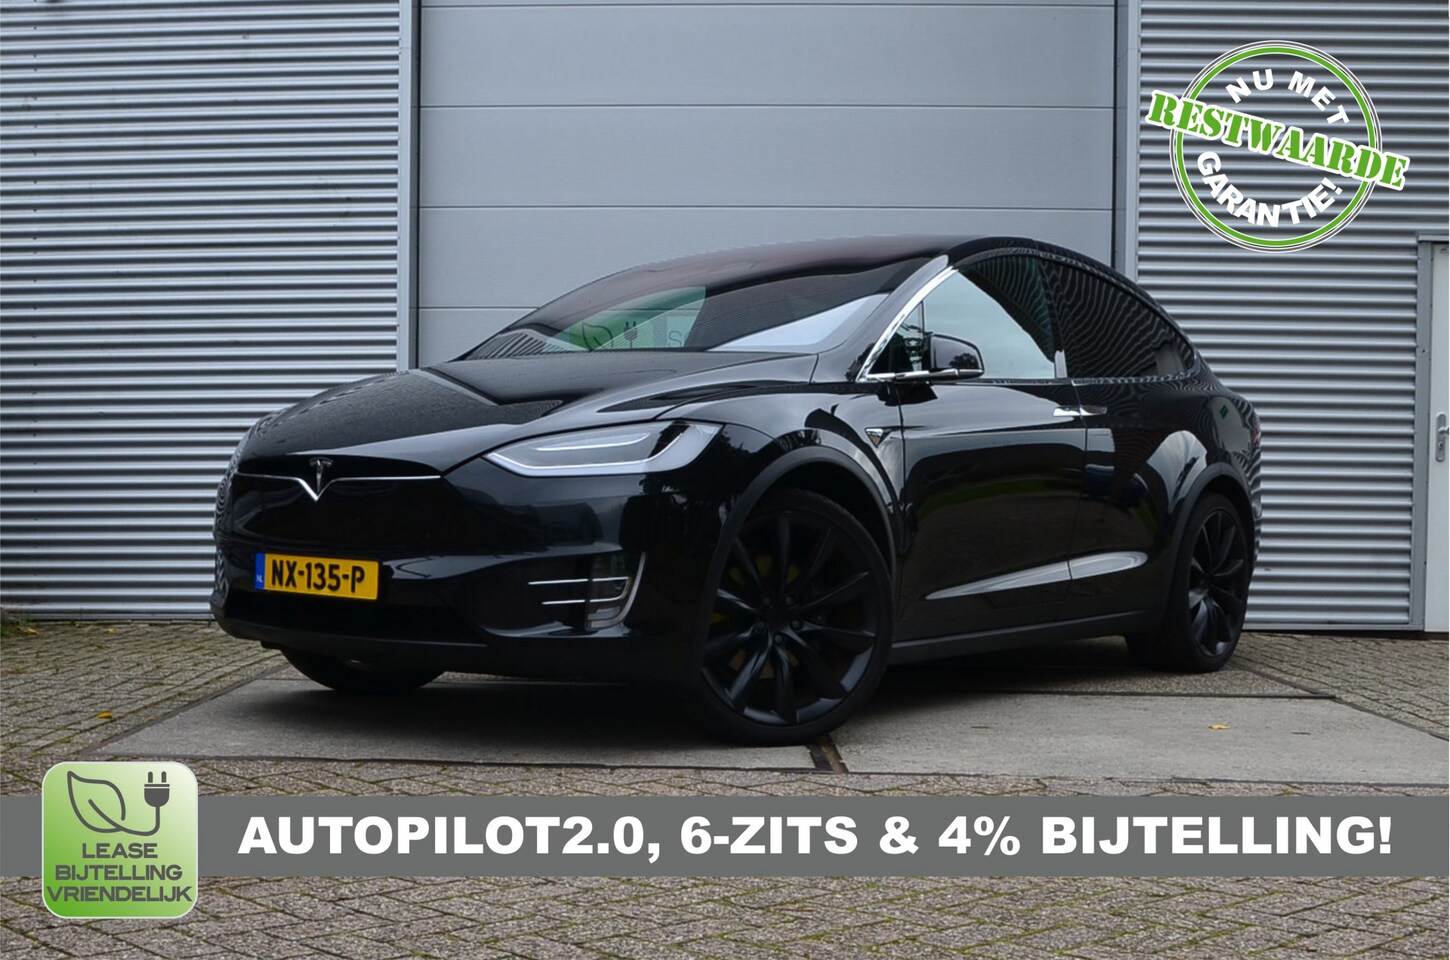 Tesla Model X - 90D (4x4) 6p. AutoPilot2.0, rijklaar prijs - AutoWereld.nl